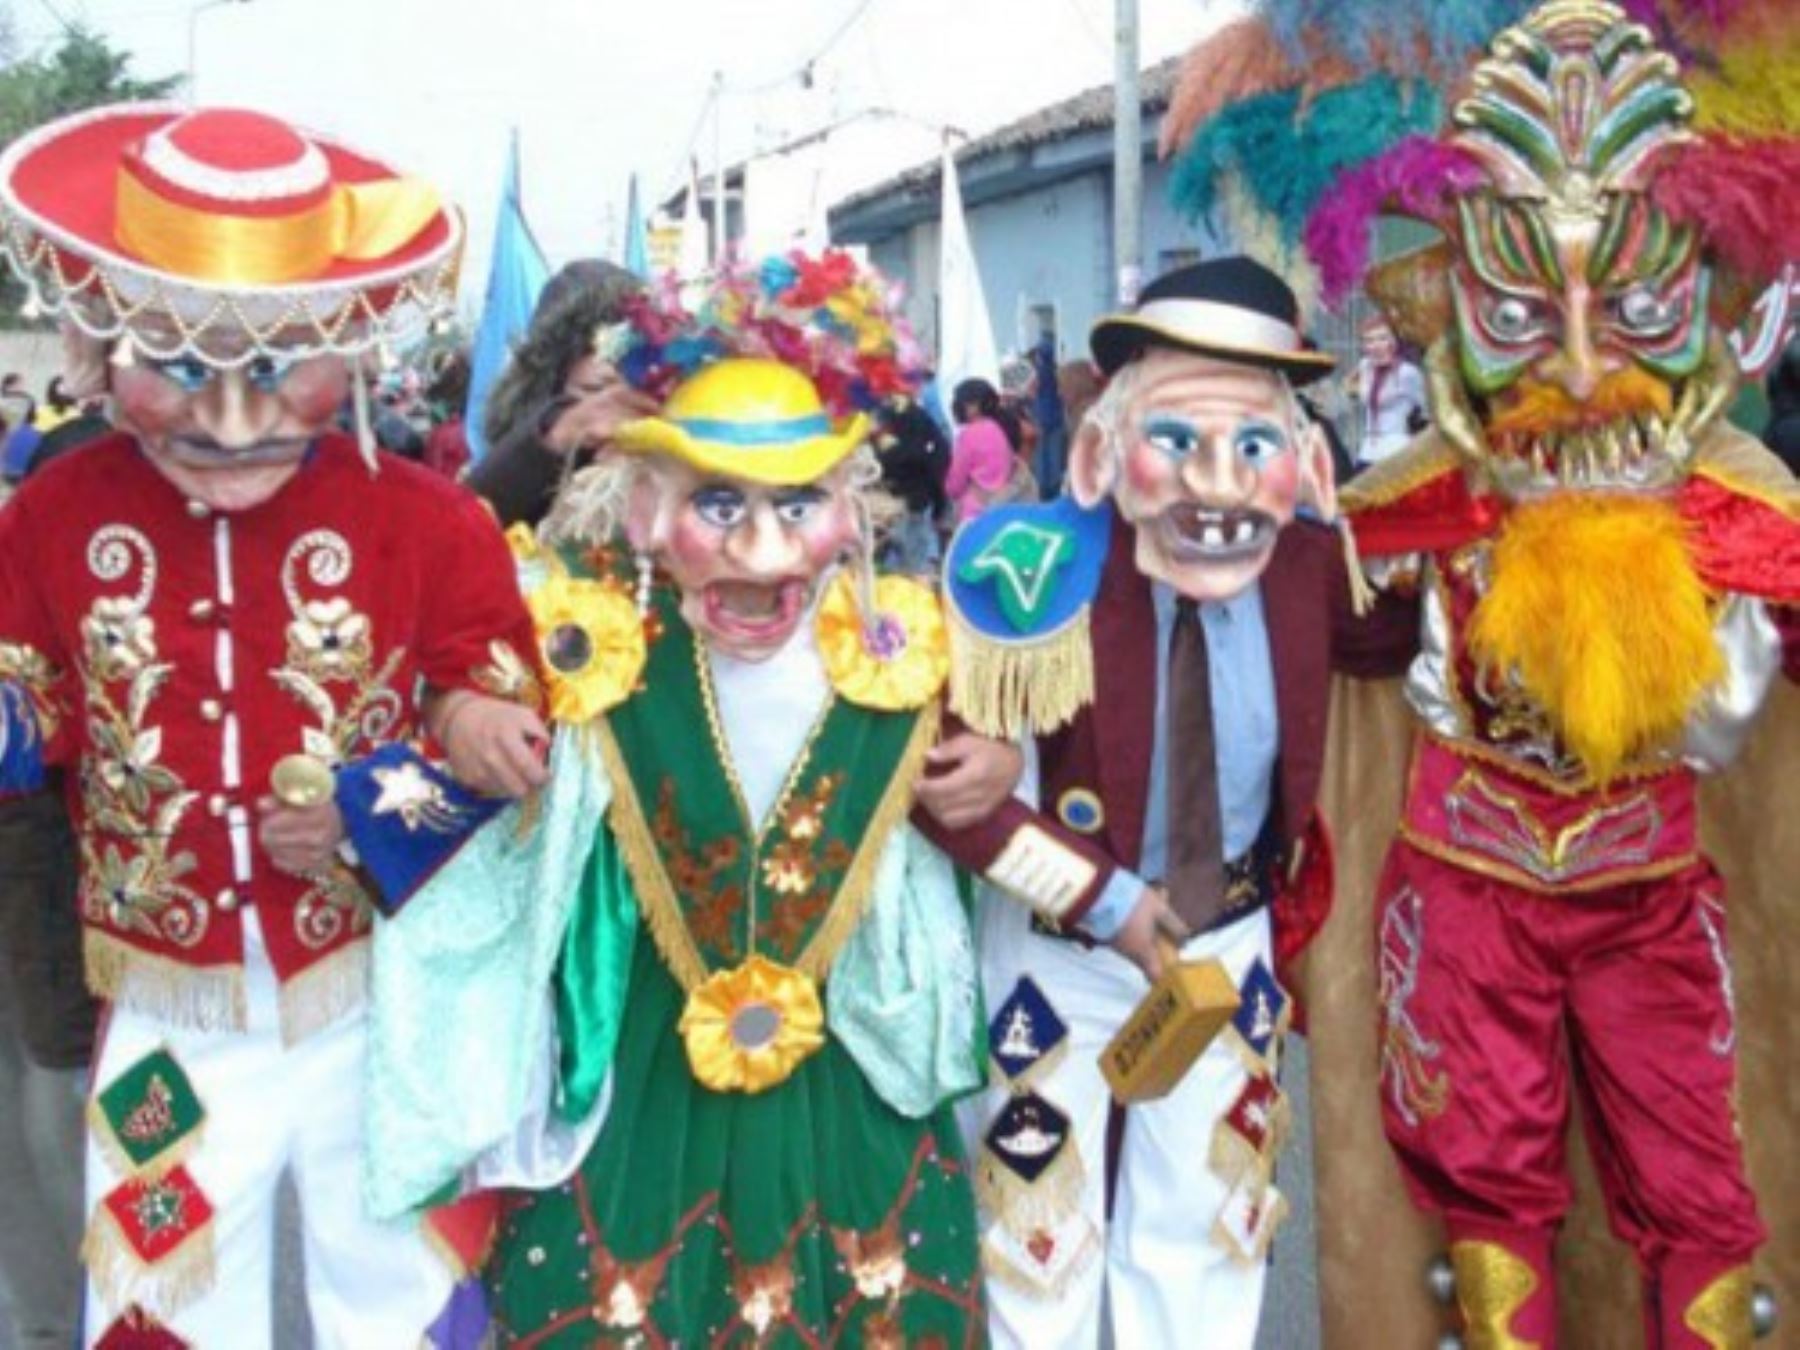 Con el entierro simbólico del "rey Momo" en el río Quillcay, en presencia de numerosos pobladores, finaliza hoy el tradicional Carnaval Huaracino, que en su edición 2016 congregó a alrededor de 5,000 turistas, entre nacionales y extranjeros.